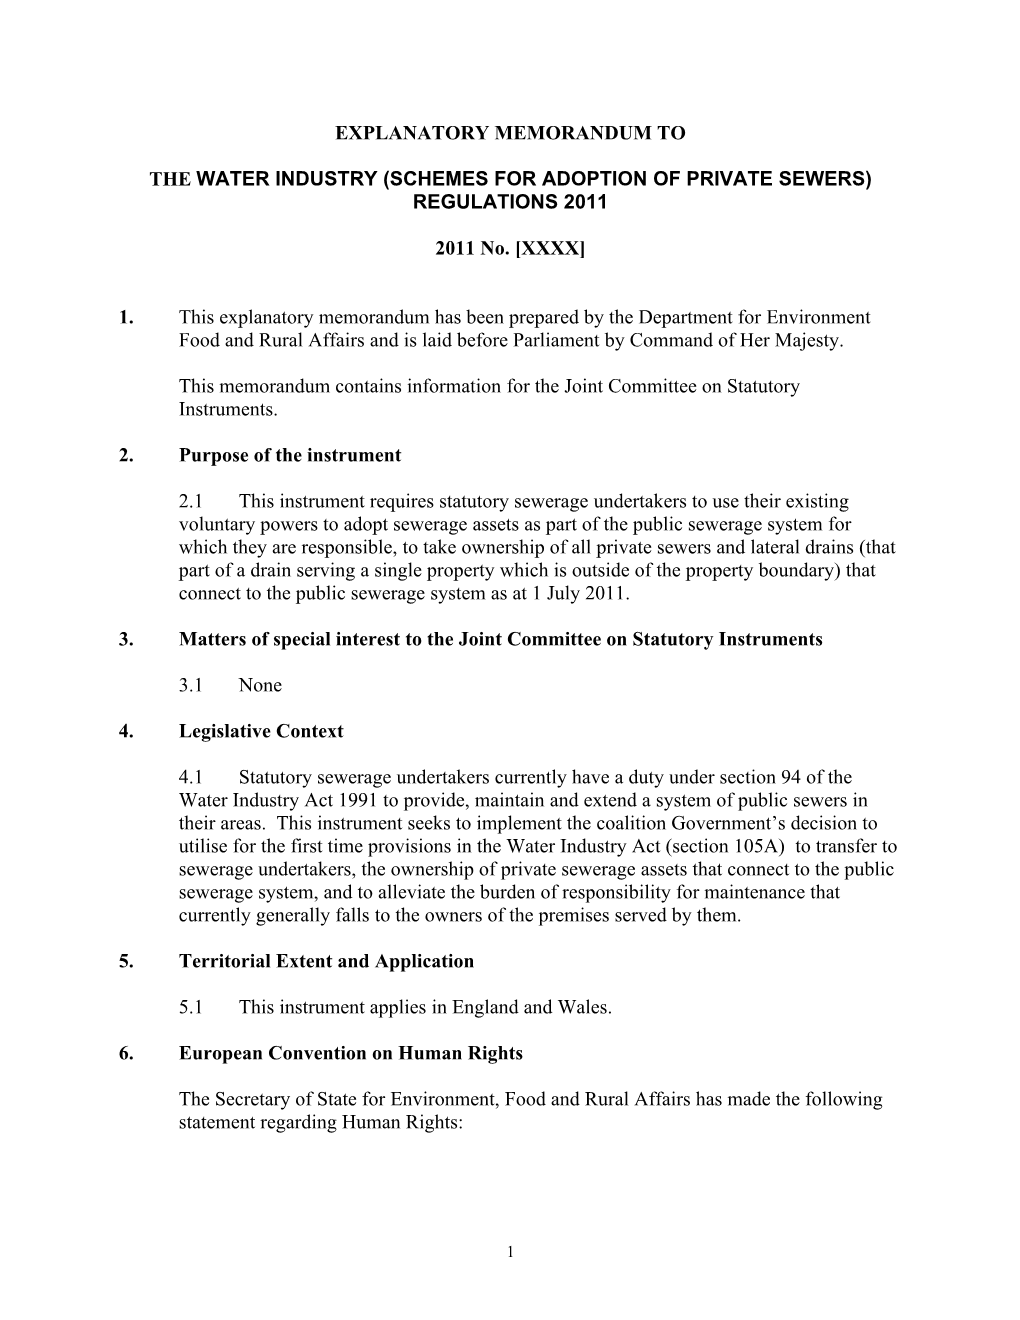 Explanatory Memorandum to the Water Industry